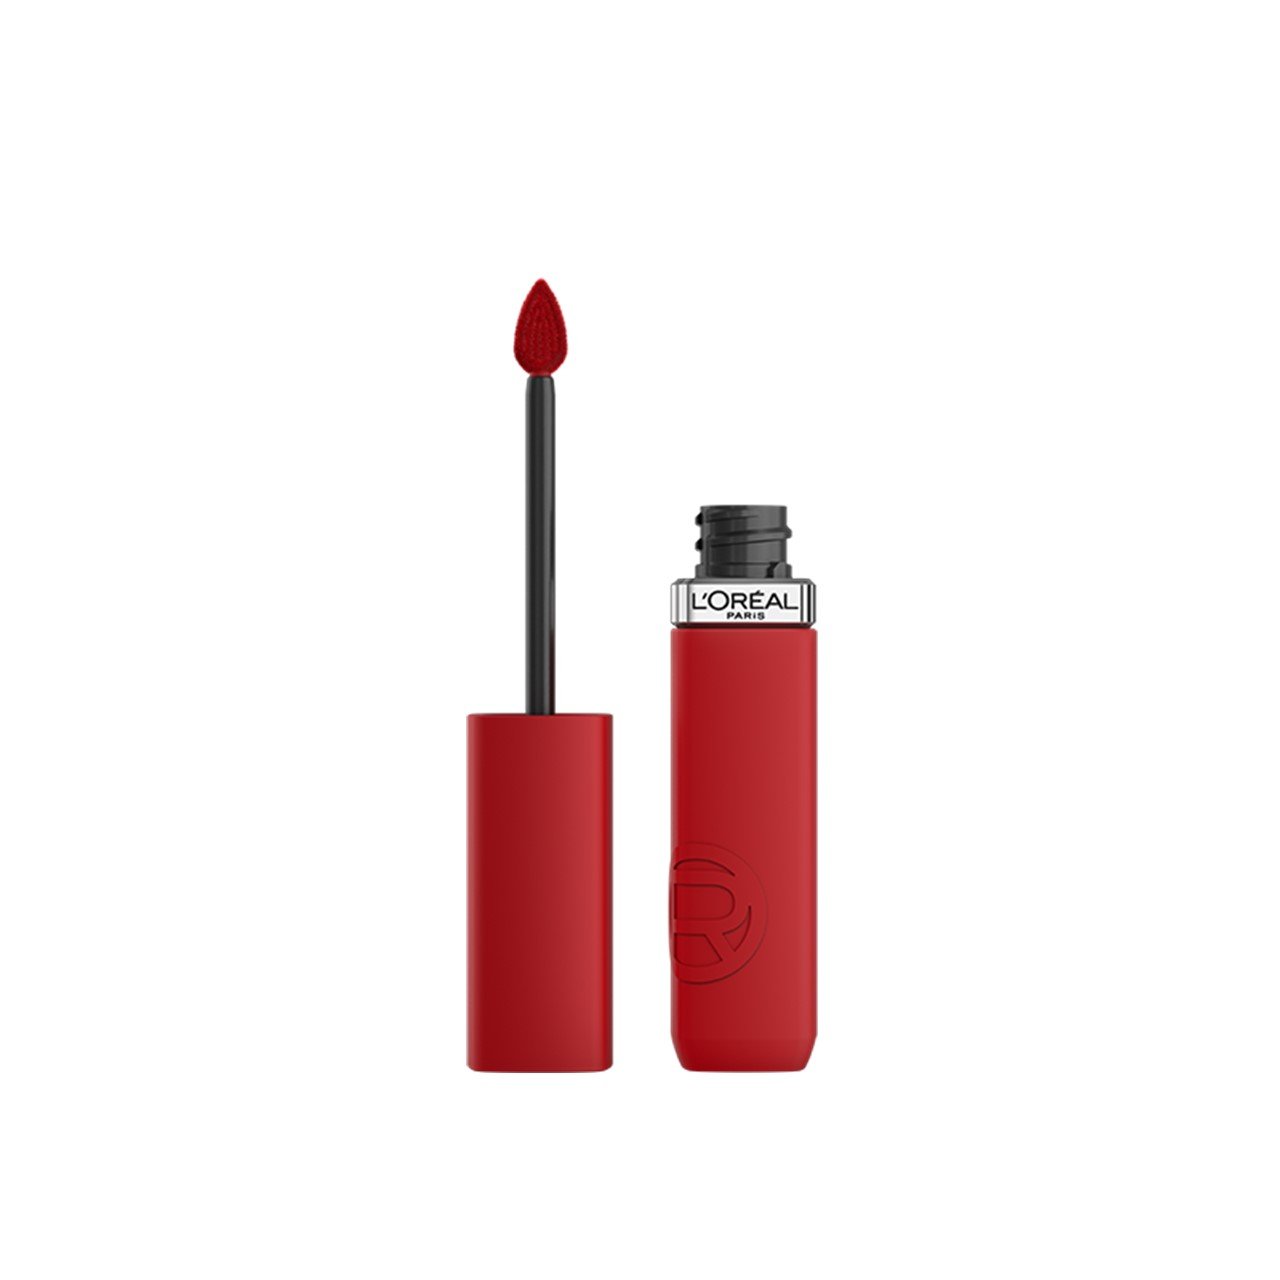 L'Oréal Paris Infallible Matte Resistance Liquid Lipstick 425 Afterwork Drink(s) 5ml (0.17 fl oz)